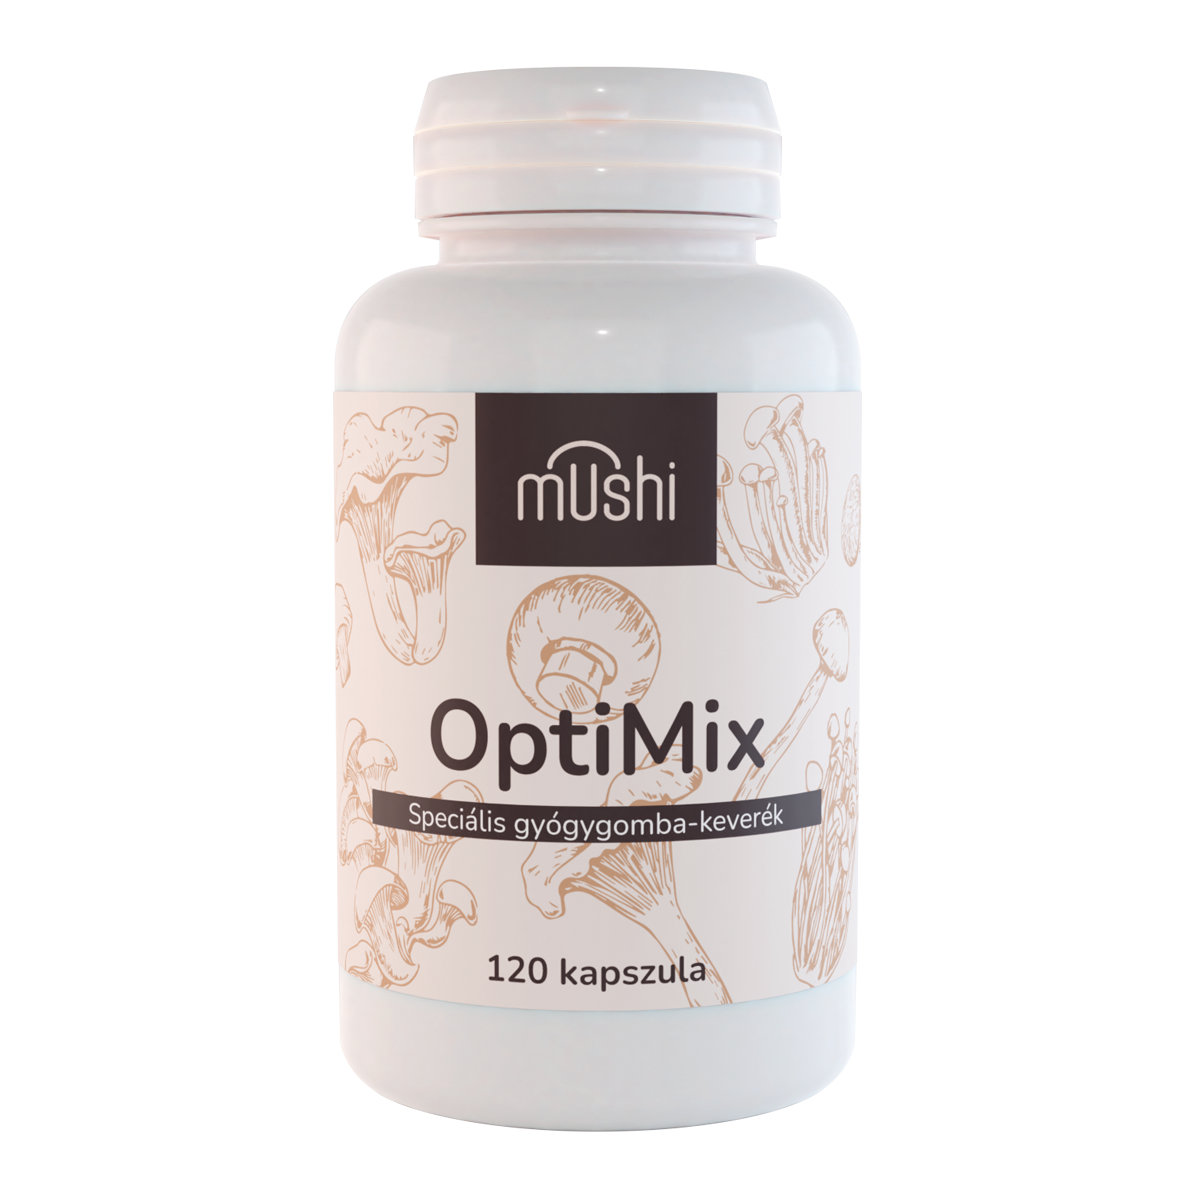 Mushi OptiMix gyógygomba-keverék kapszula 60 db 